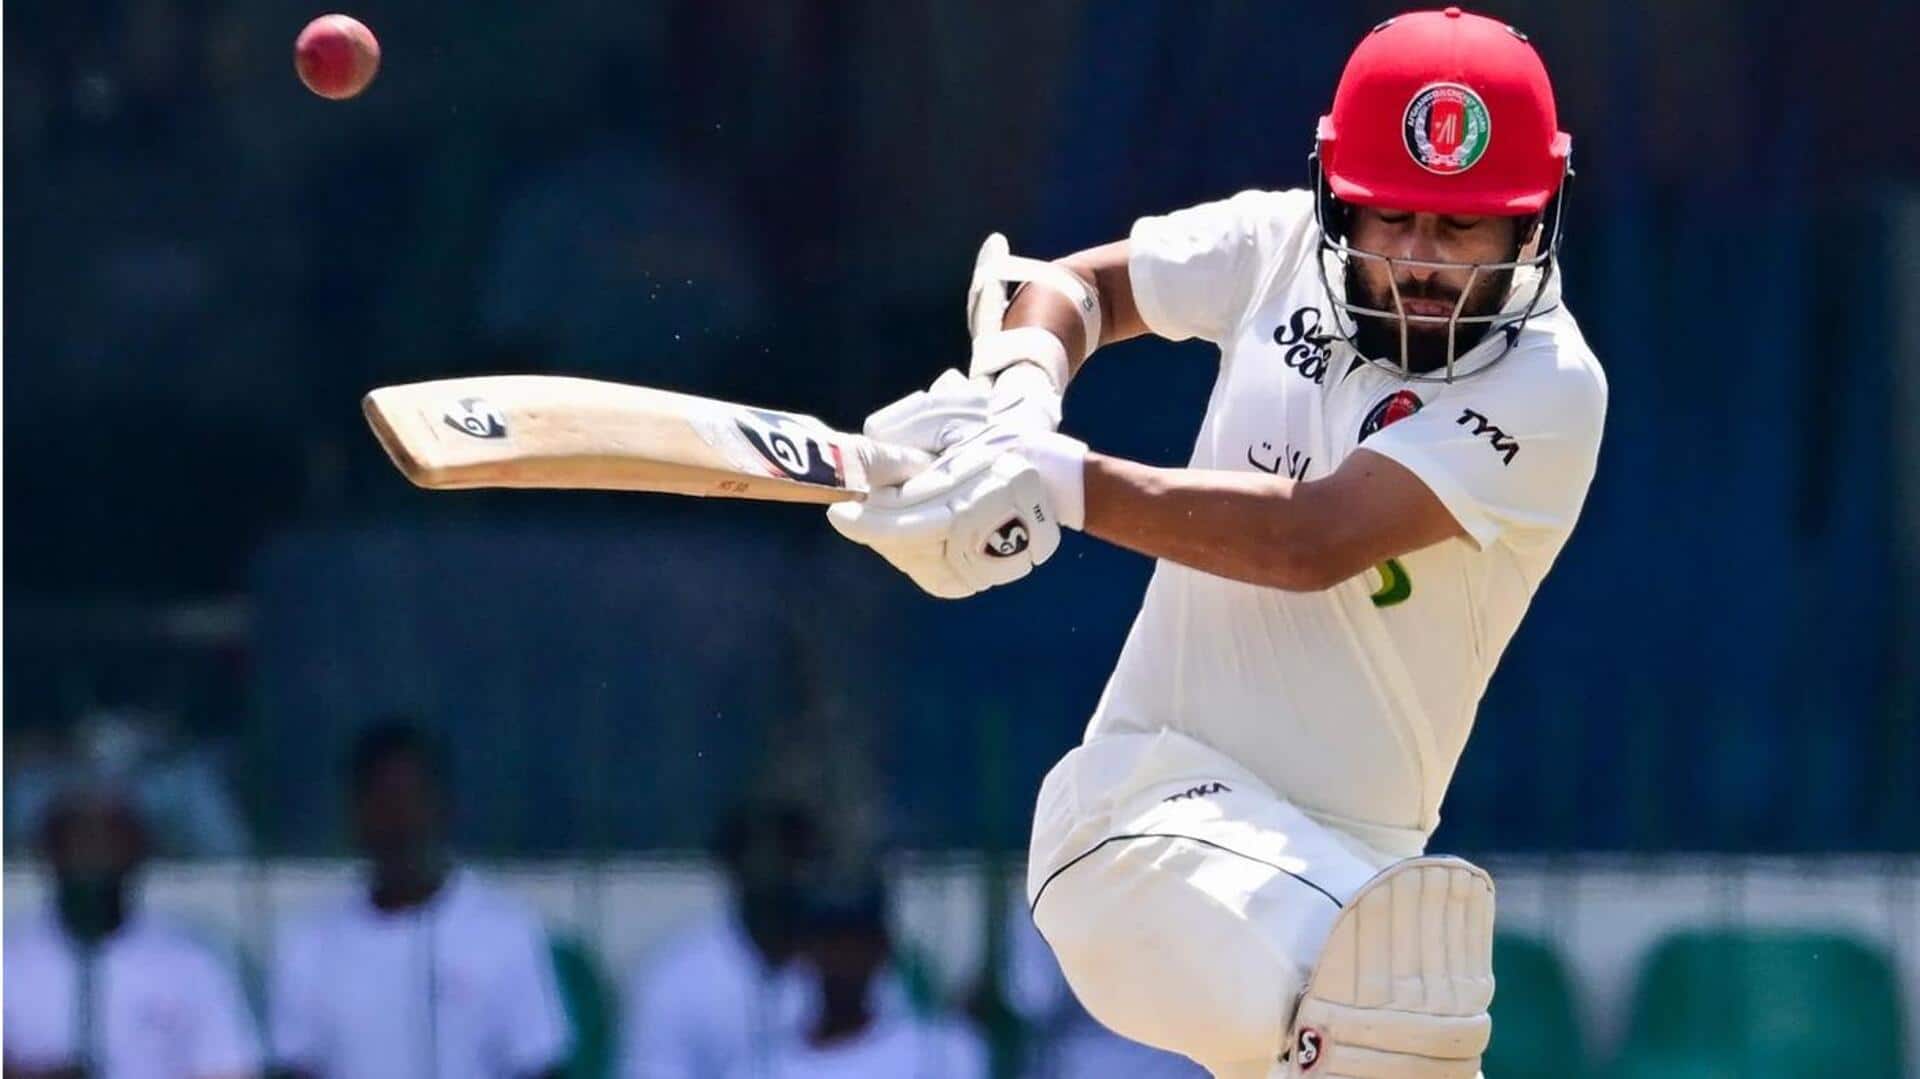 Afghanistan captain Hashmatullah Shahidi slams his second Test fifty